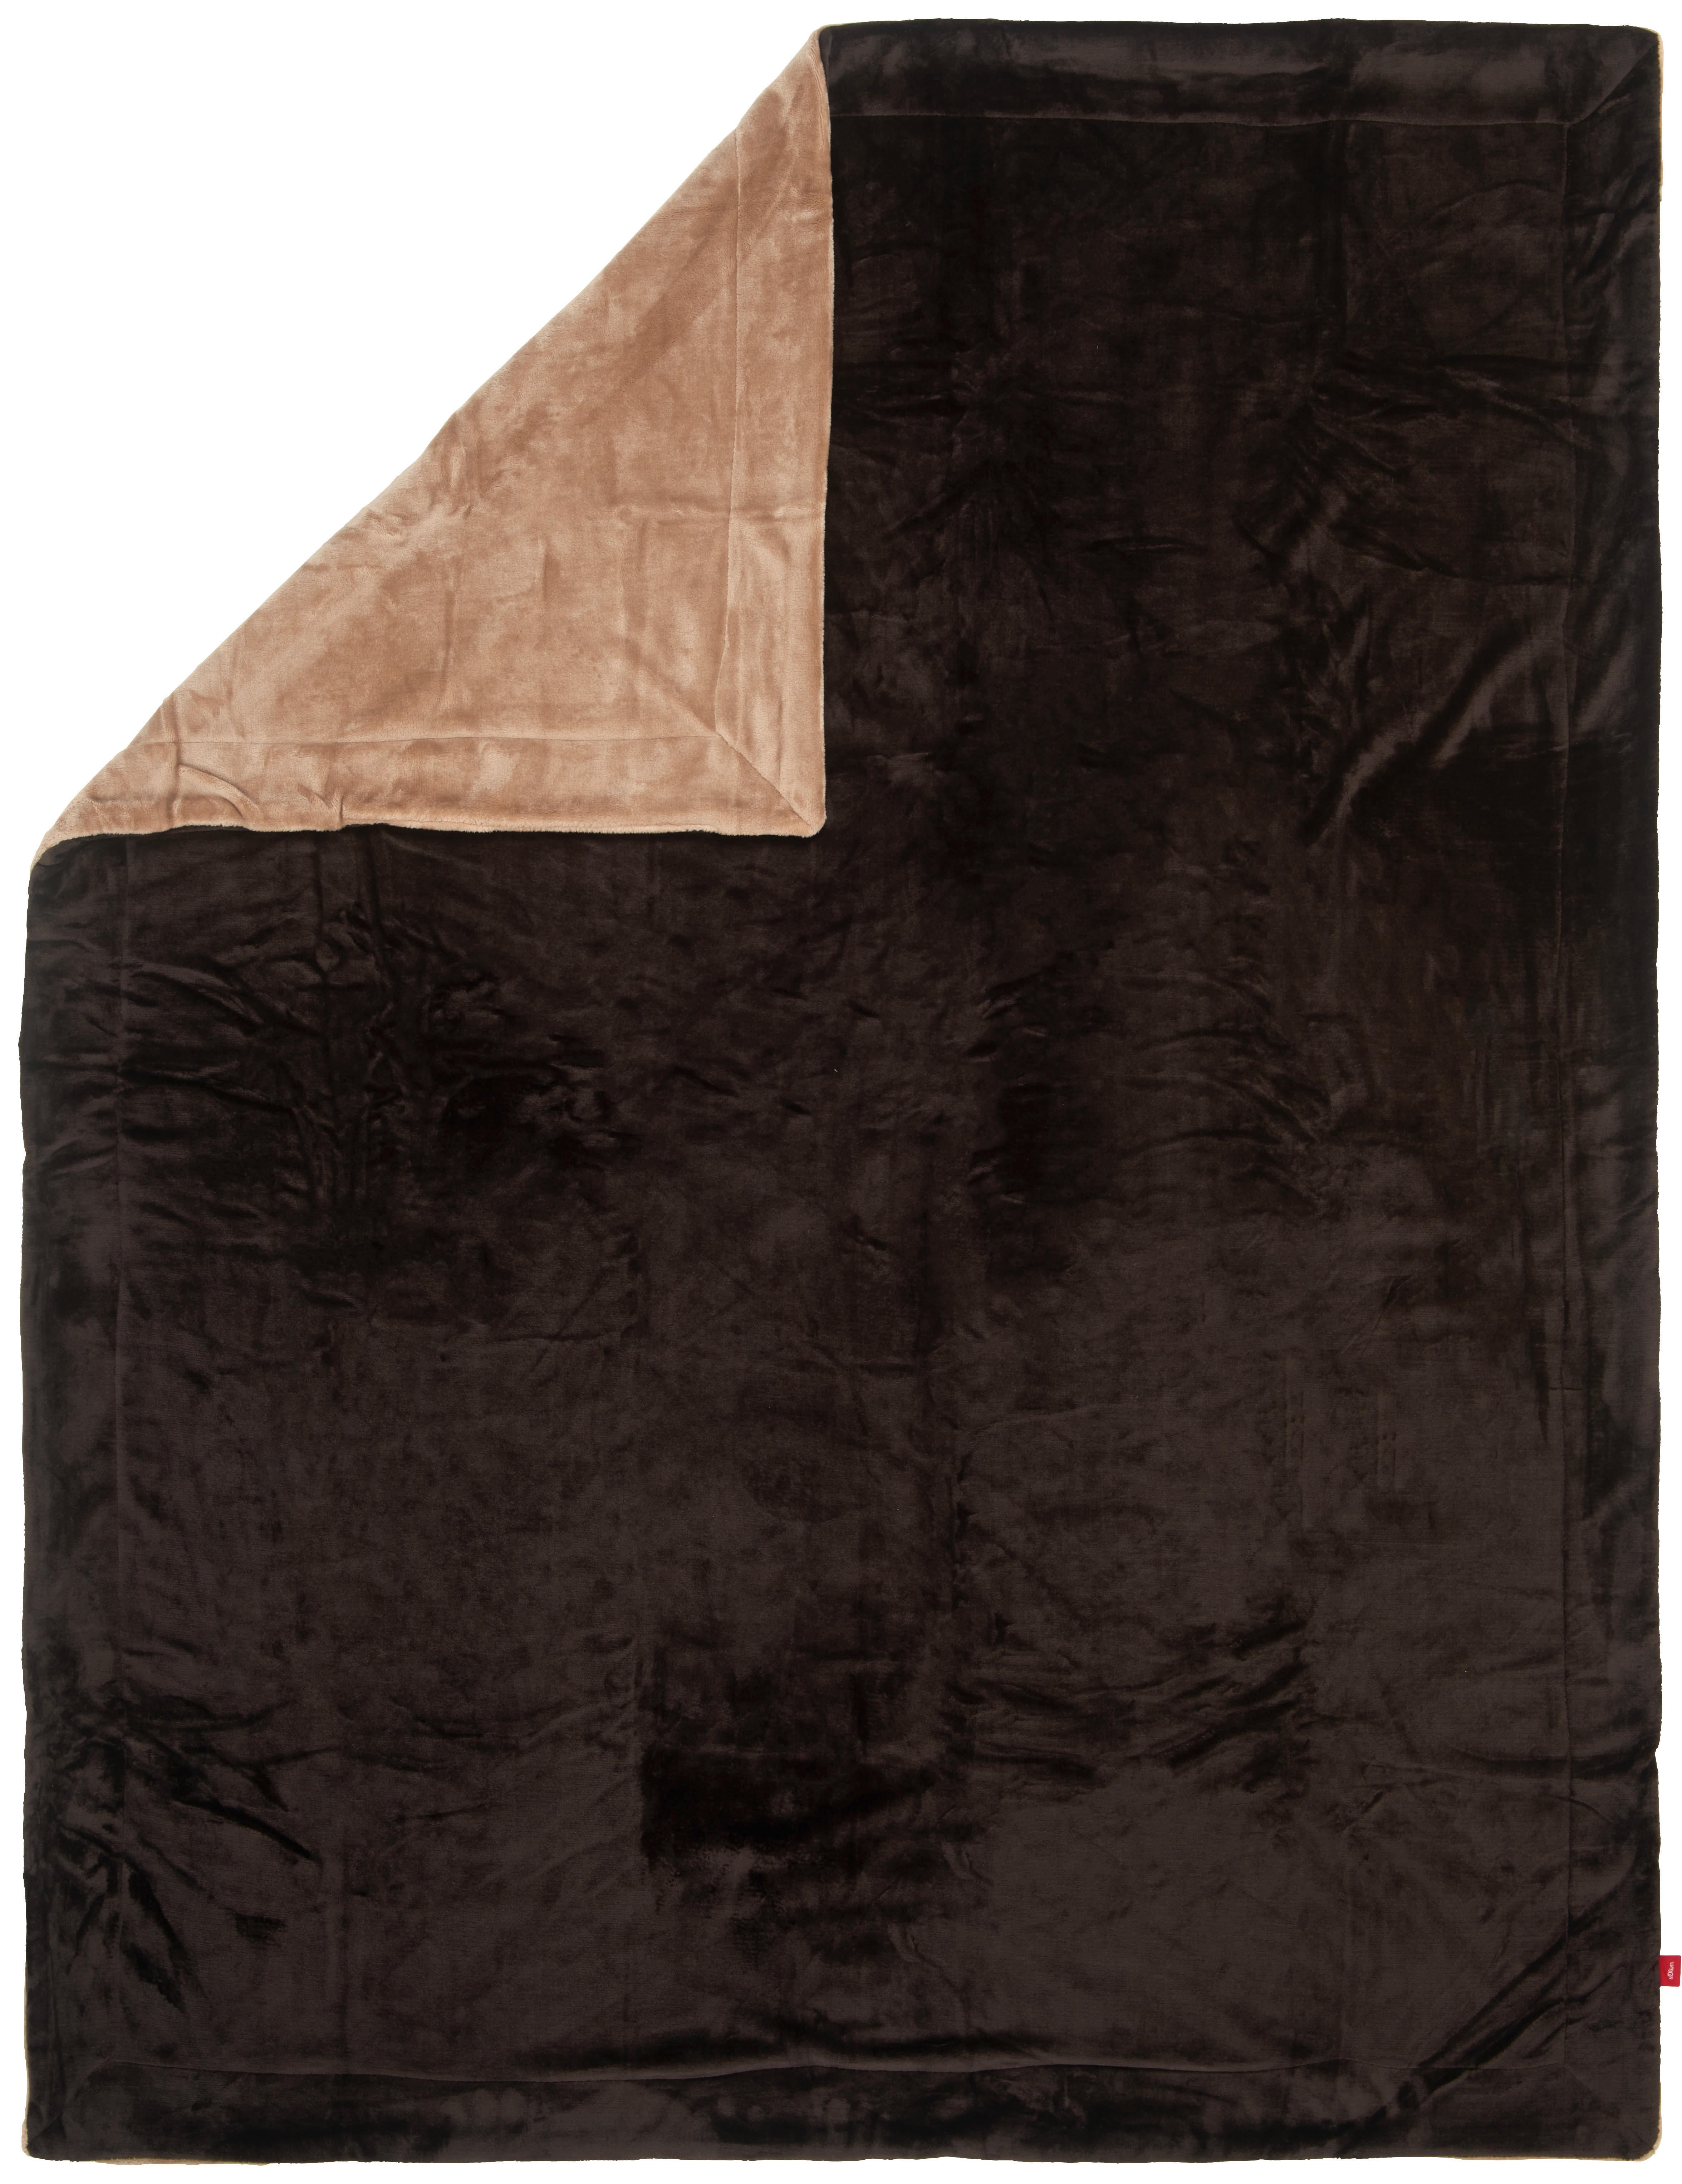 DECKE S.OLIVER 1280-350 150/200 cm Braun, Beige  - Beige/Braun, KONVENTIONELL, Textil (150/200cm) - S. Oliver